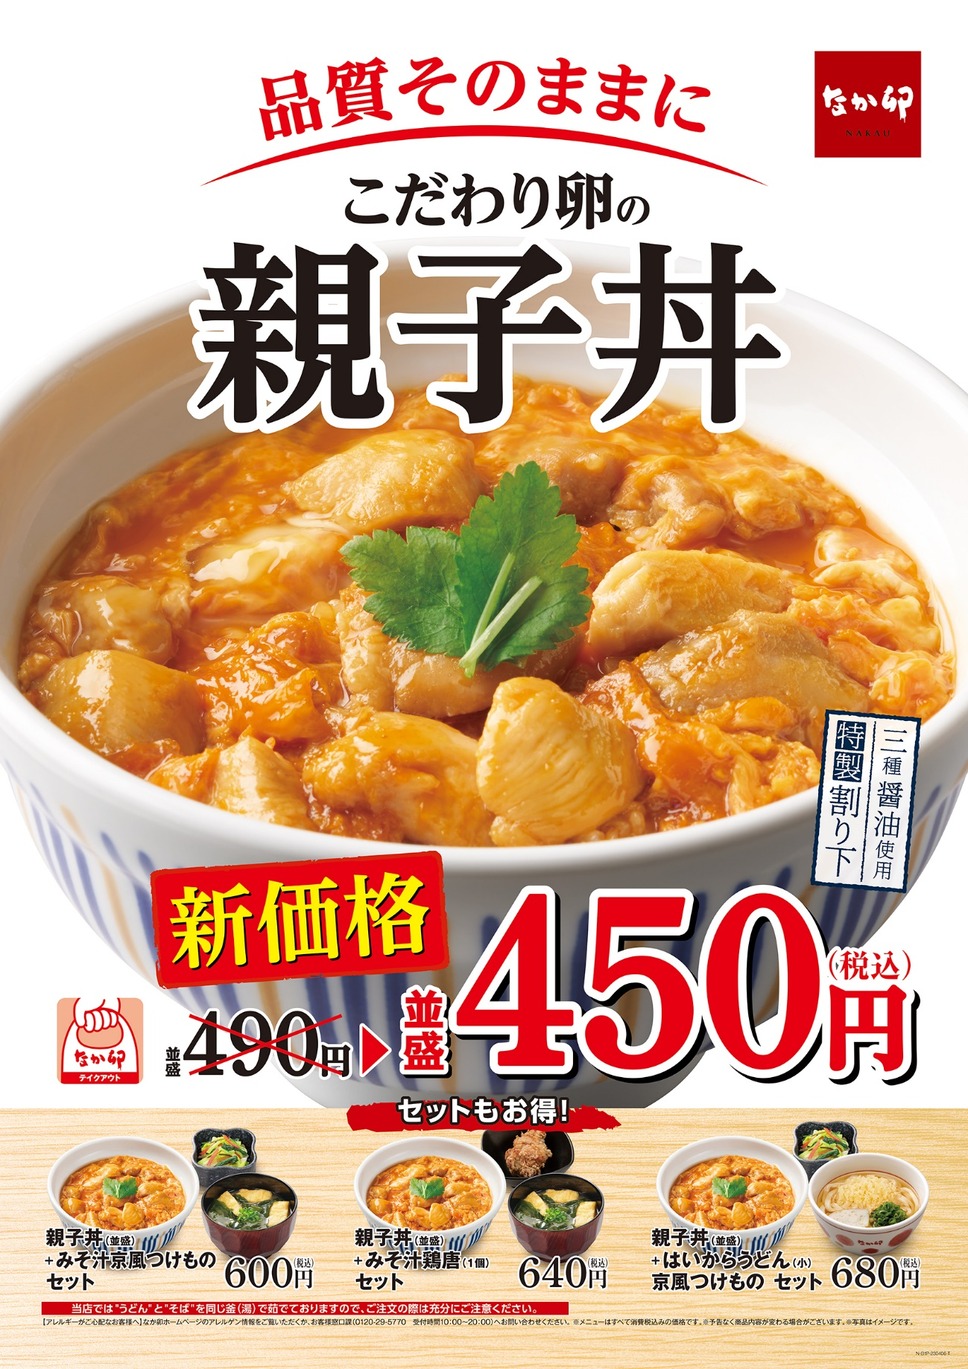 「親子丼」新価格で40円値下げへ